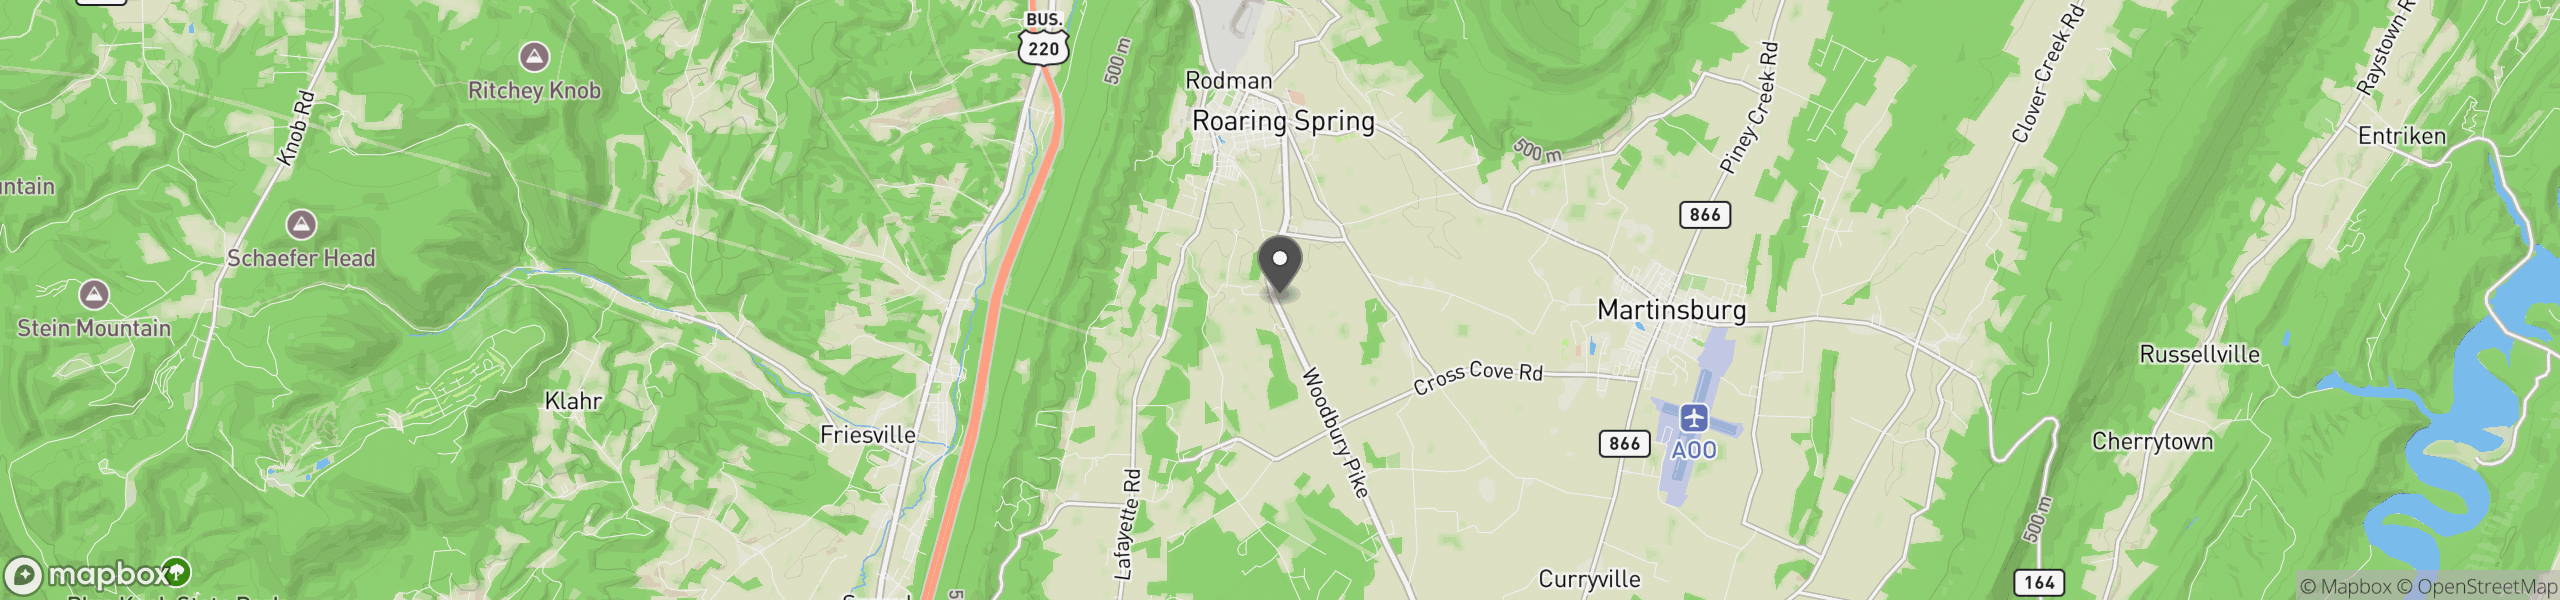 Roaring Spring, PA